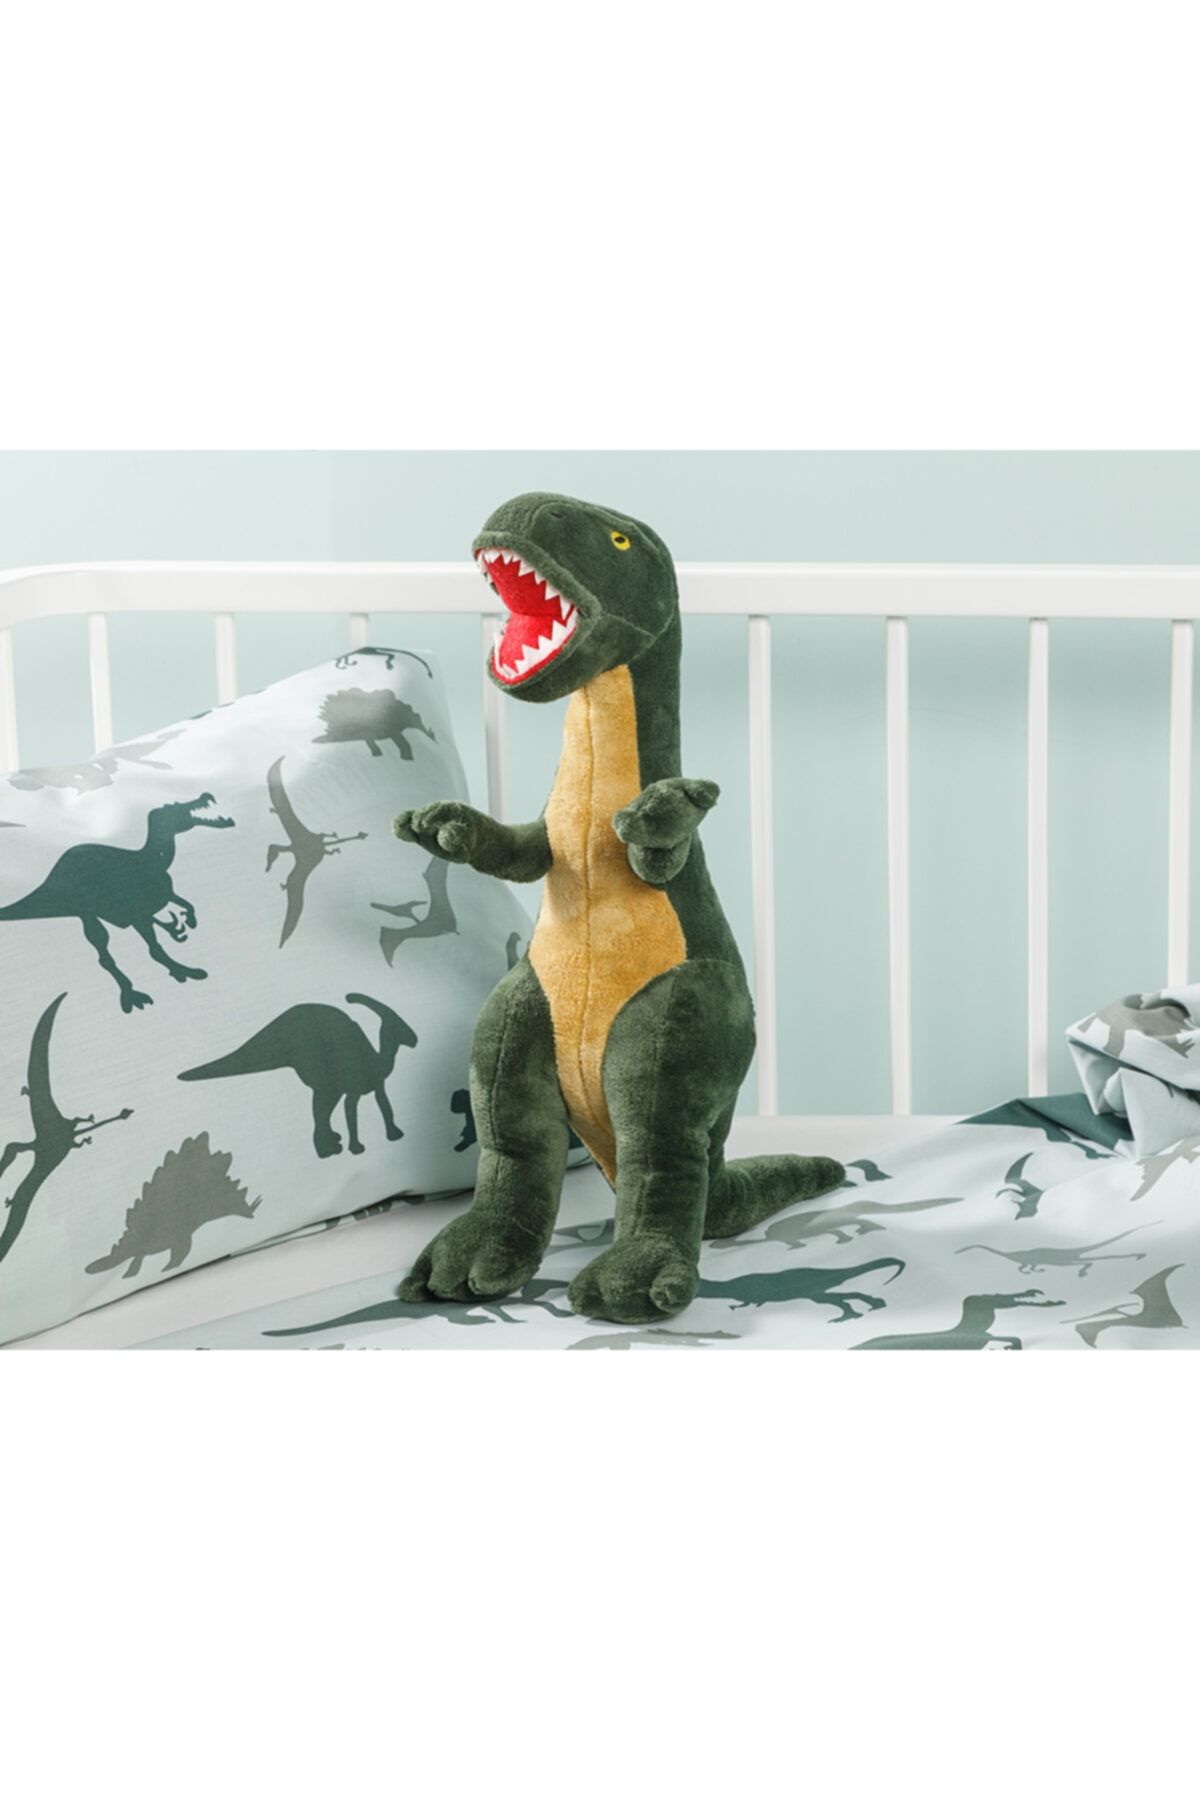 SHIVA Gift&More Dinasours Dinozor T-rex Dekoratif Dinazor Yastık Oyun Uyku Arkadaşı 45x16 Yeşil